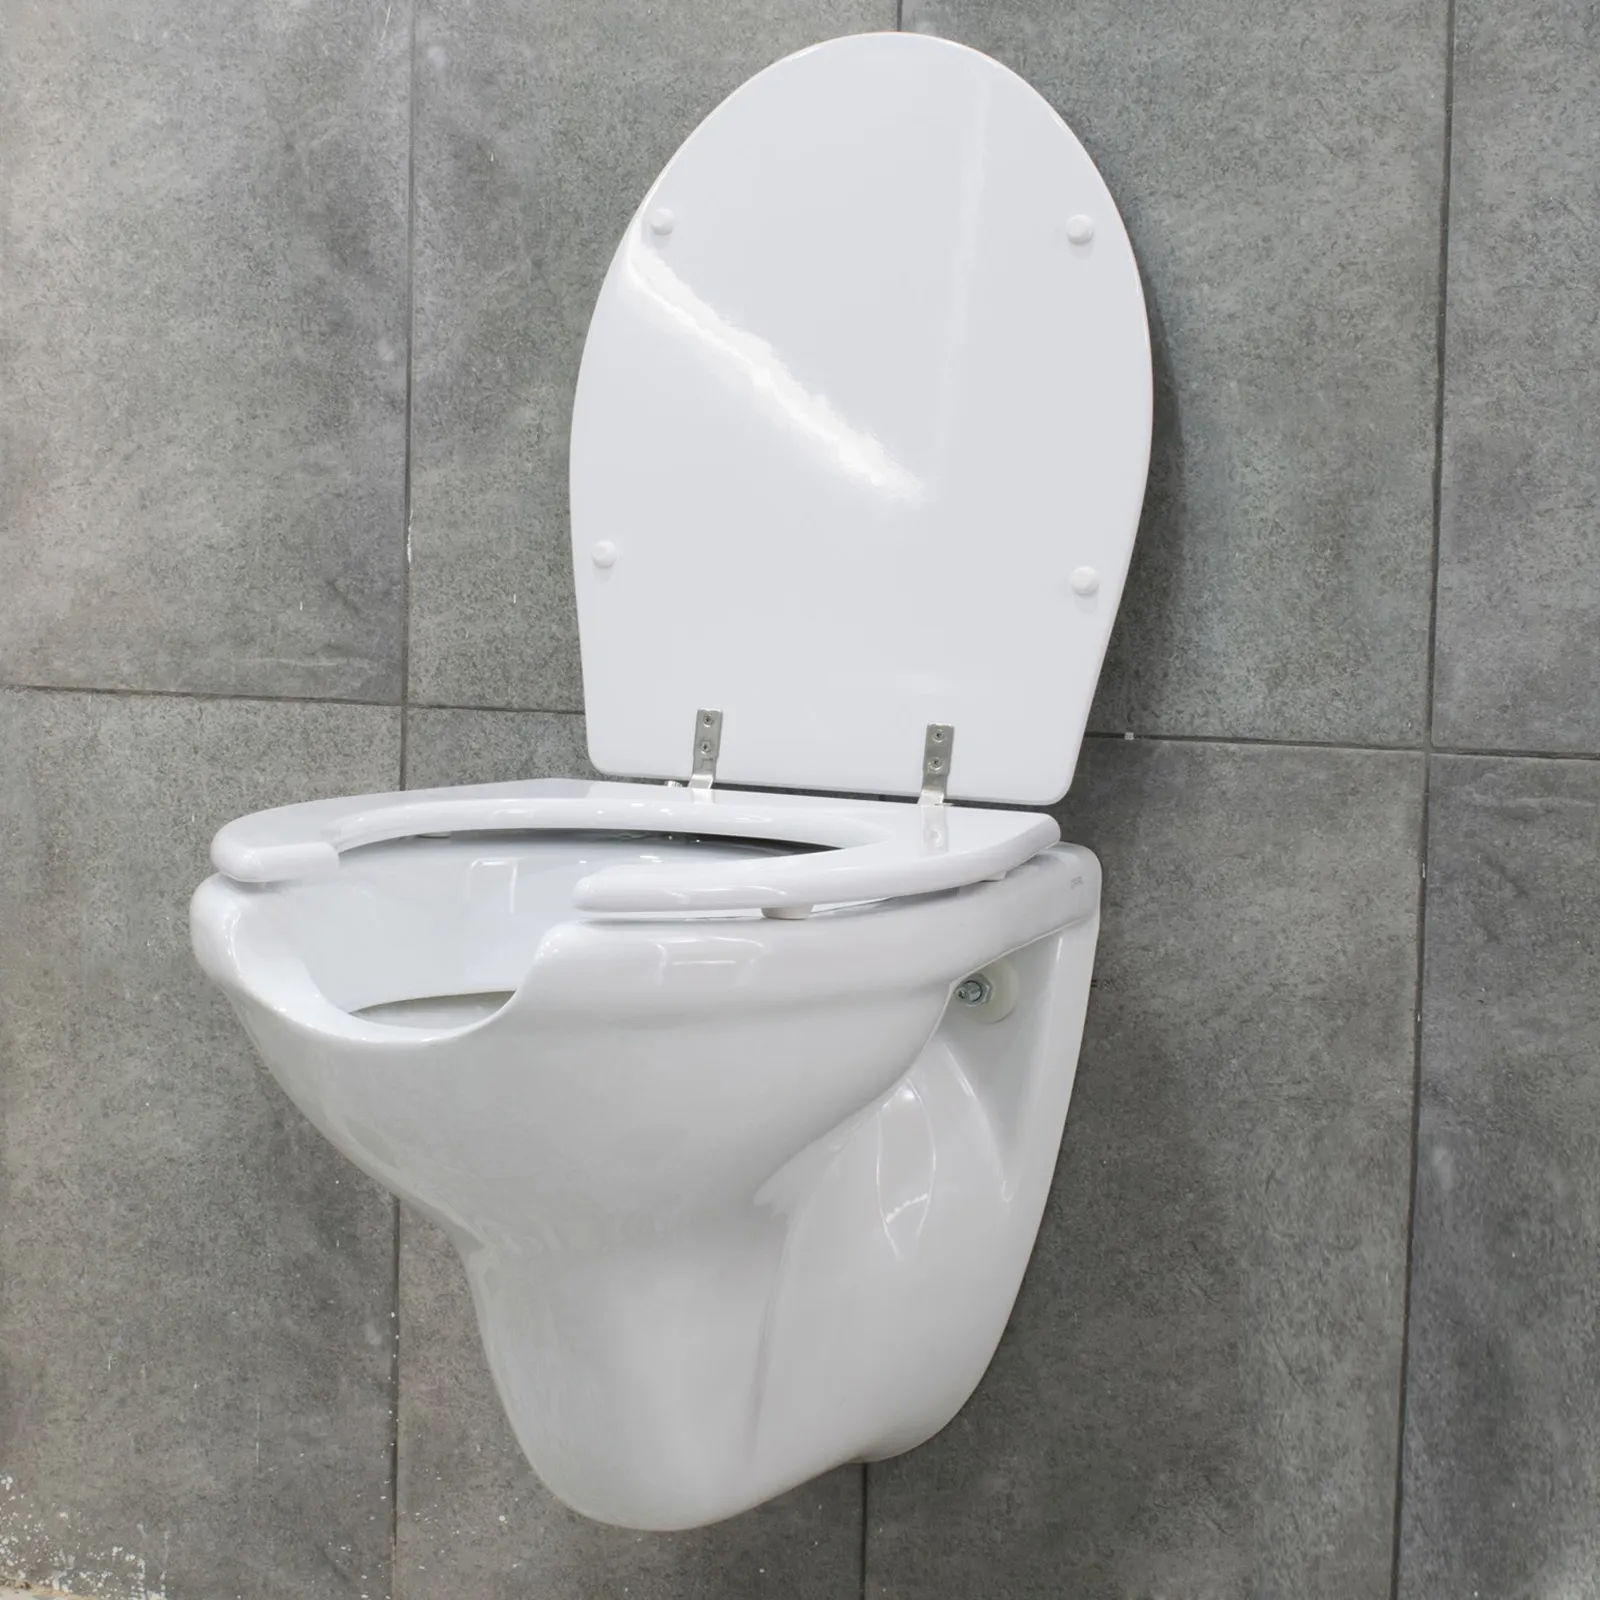 WC público móvil asistencia toilettes bidé espacio sanitario discapacitados comodidad sanitaria WC Portátil Baño de discapacidad asiento abierto